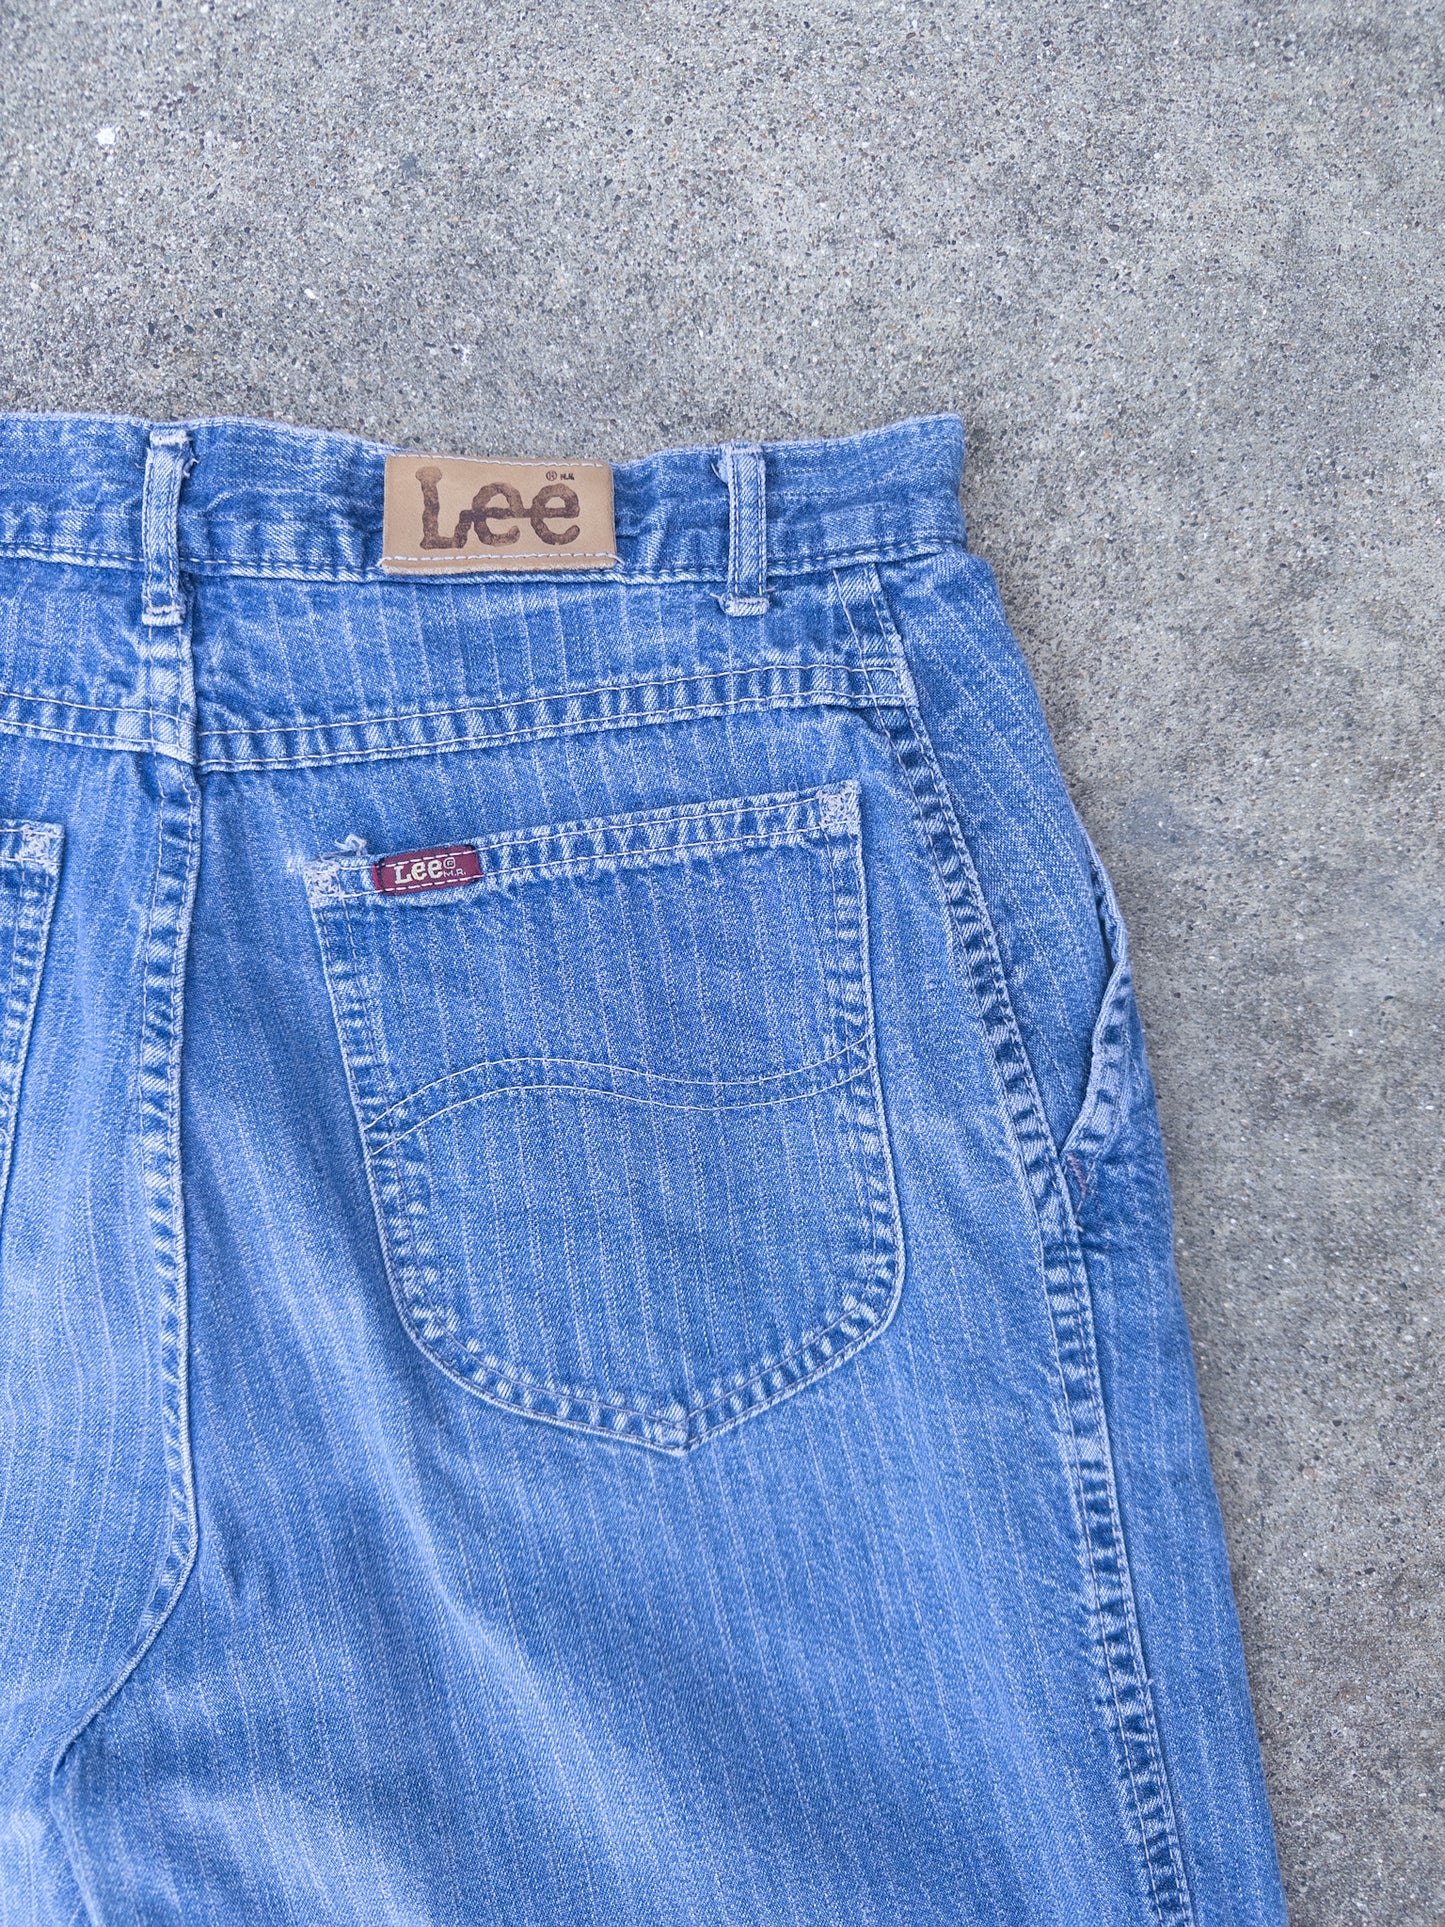 Vintage 90s Lee Riders Rail Road Strip Jeans